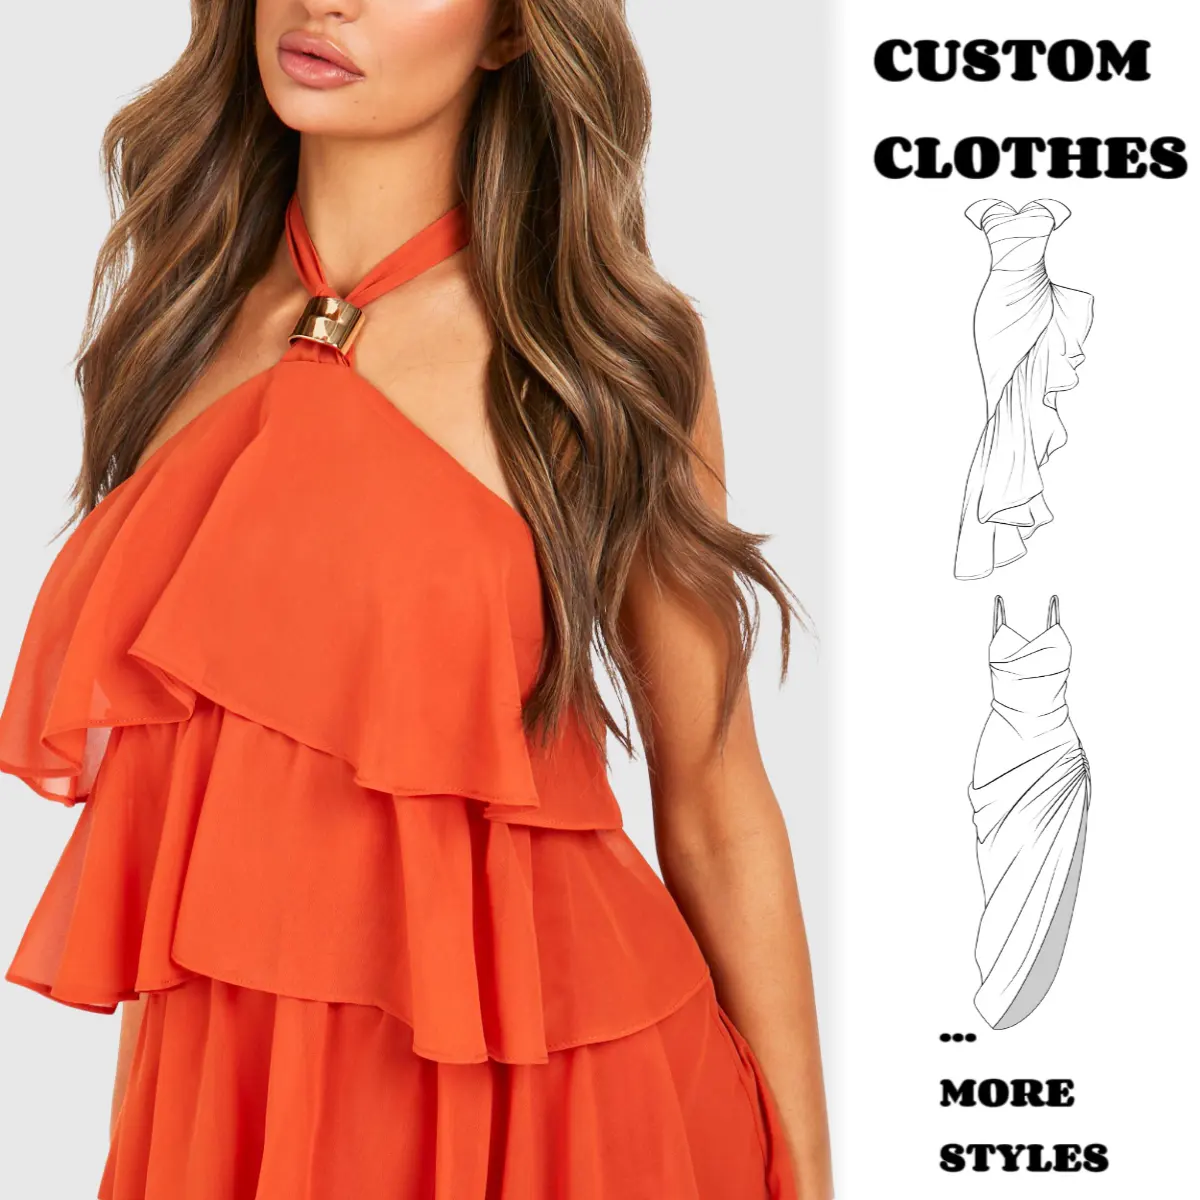 Robe en mousseline de soie orange sans manches col en V cravate robe longue robes d'été pour femmes décontractées nouvelle vente personnalisée